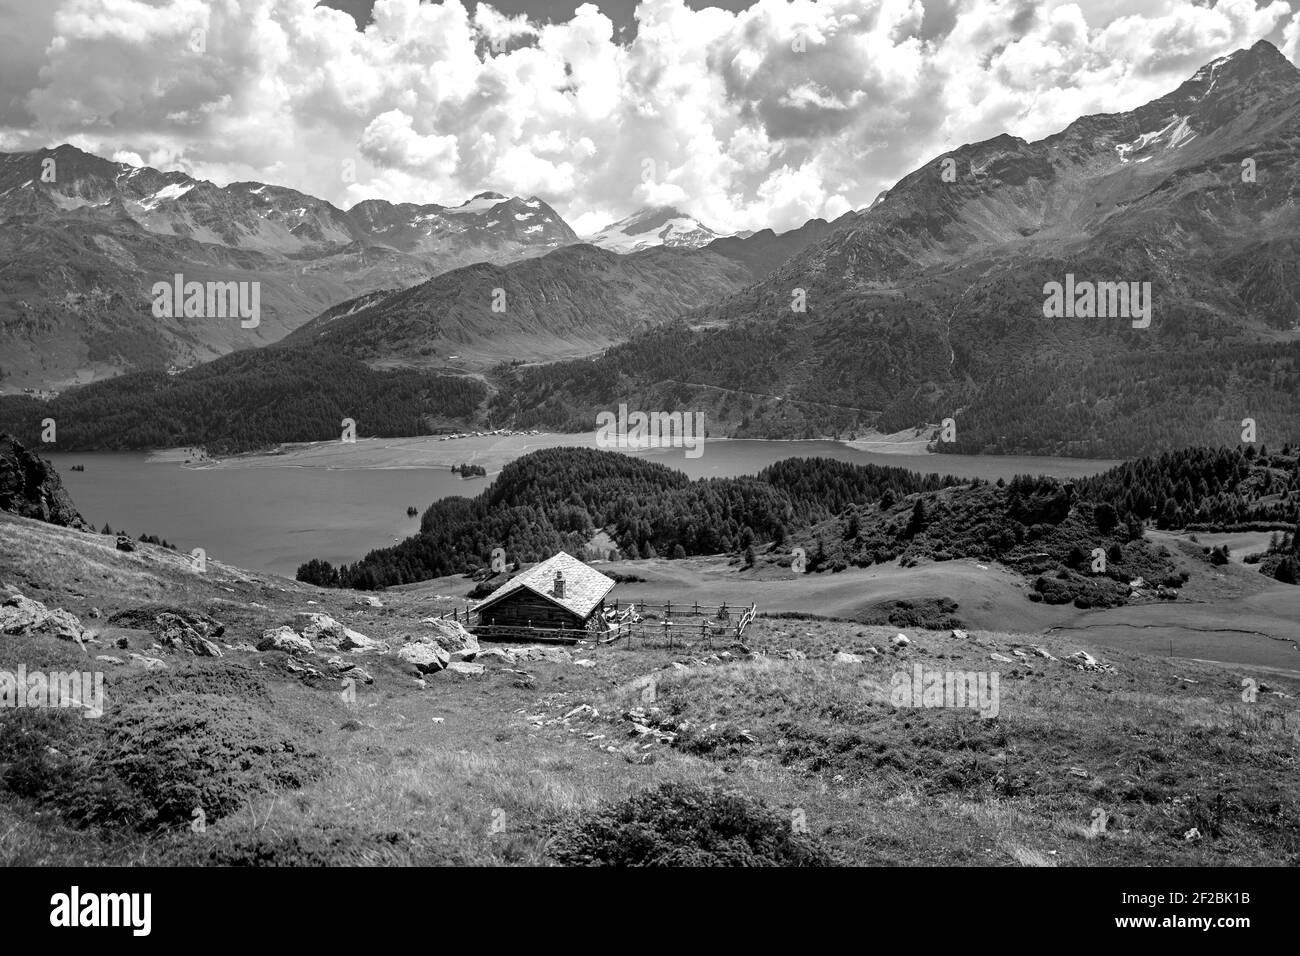 Berghütte mit Bergsee im Hintergrund, mit Panoramablick auf das Engadiner Tal, in der Schweiz. Stockfoto